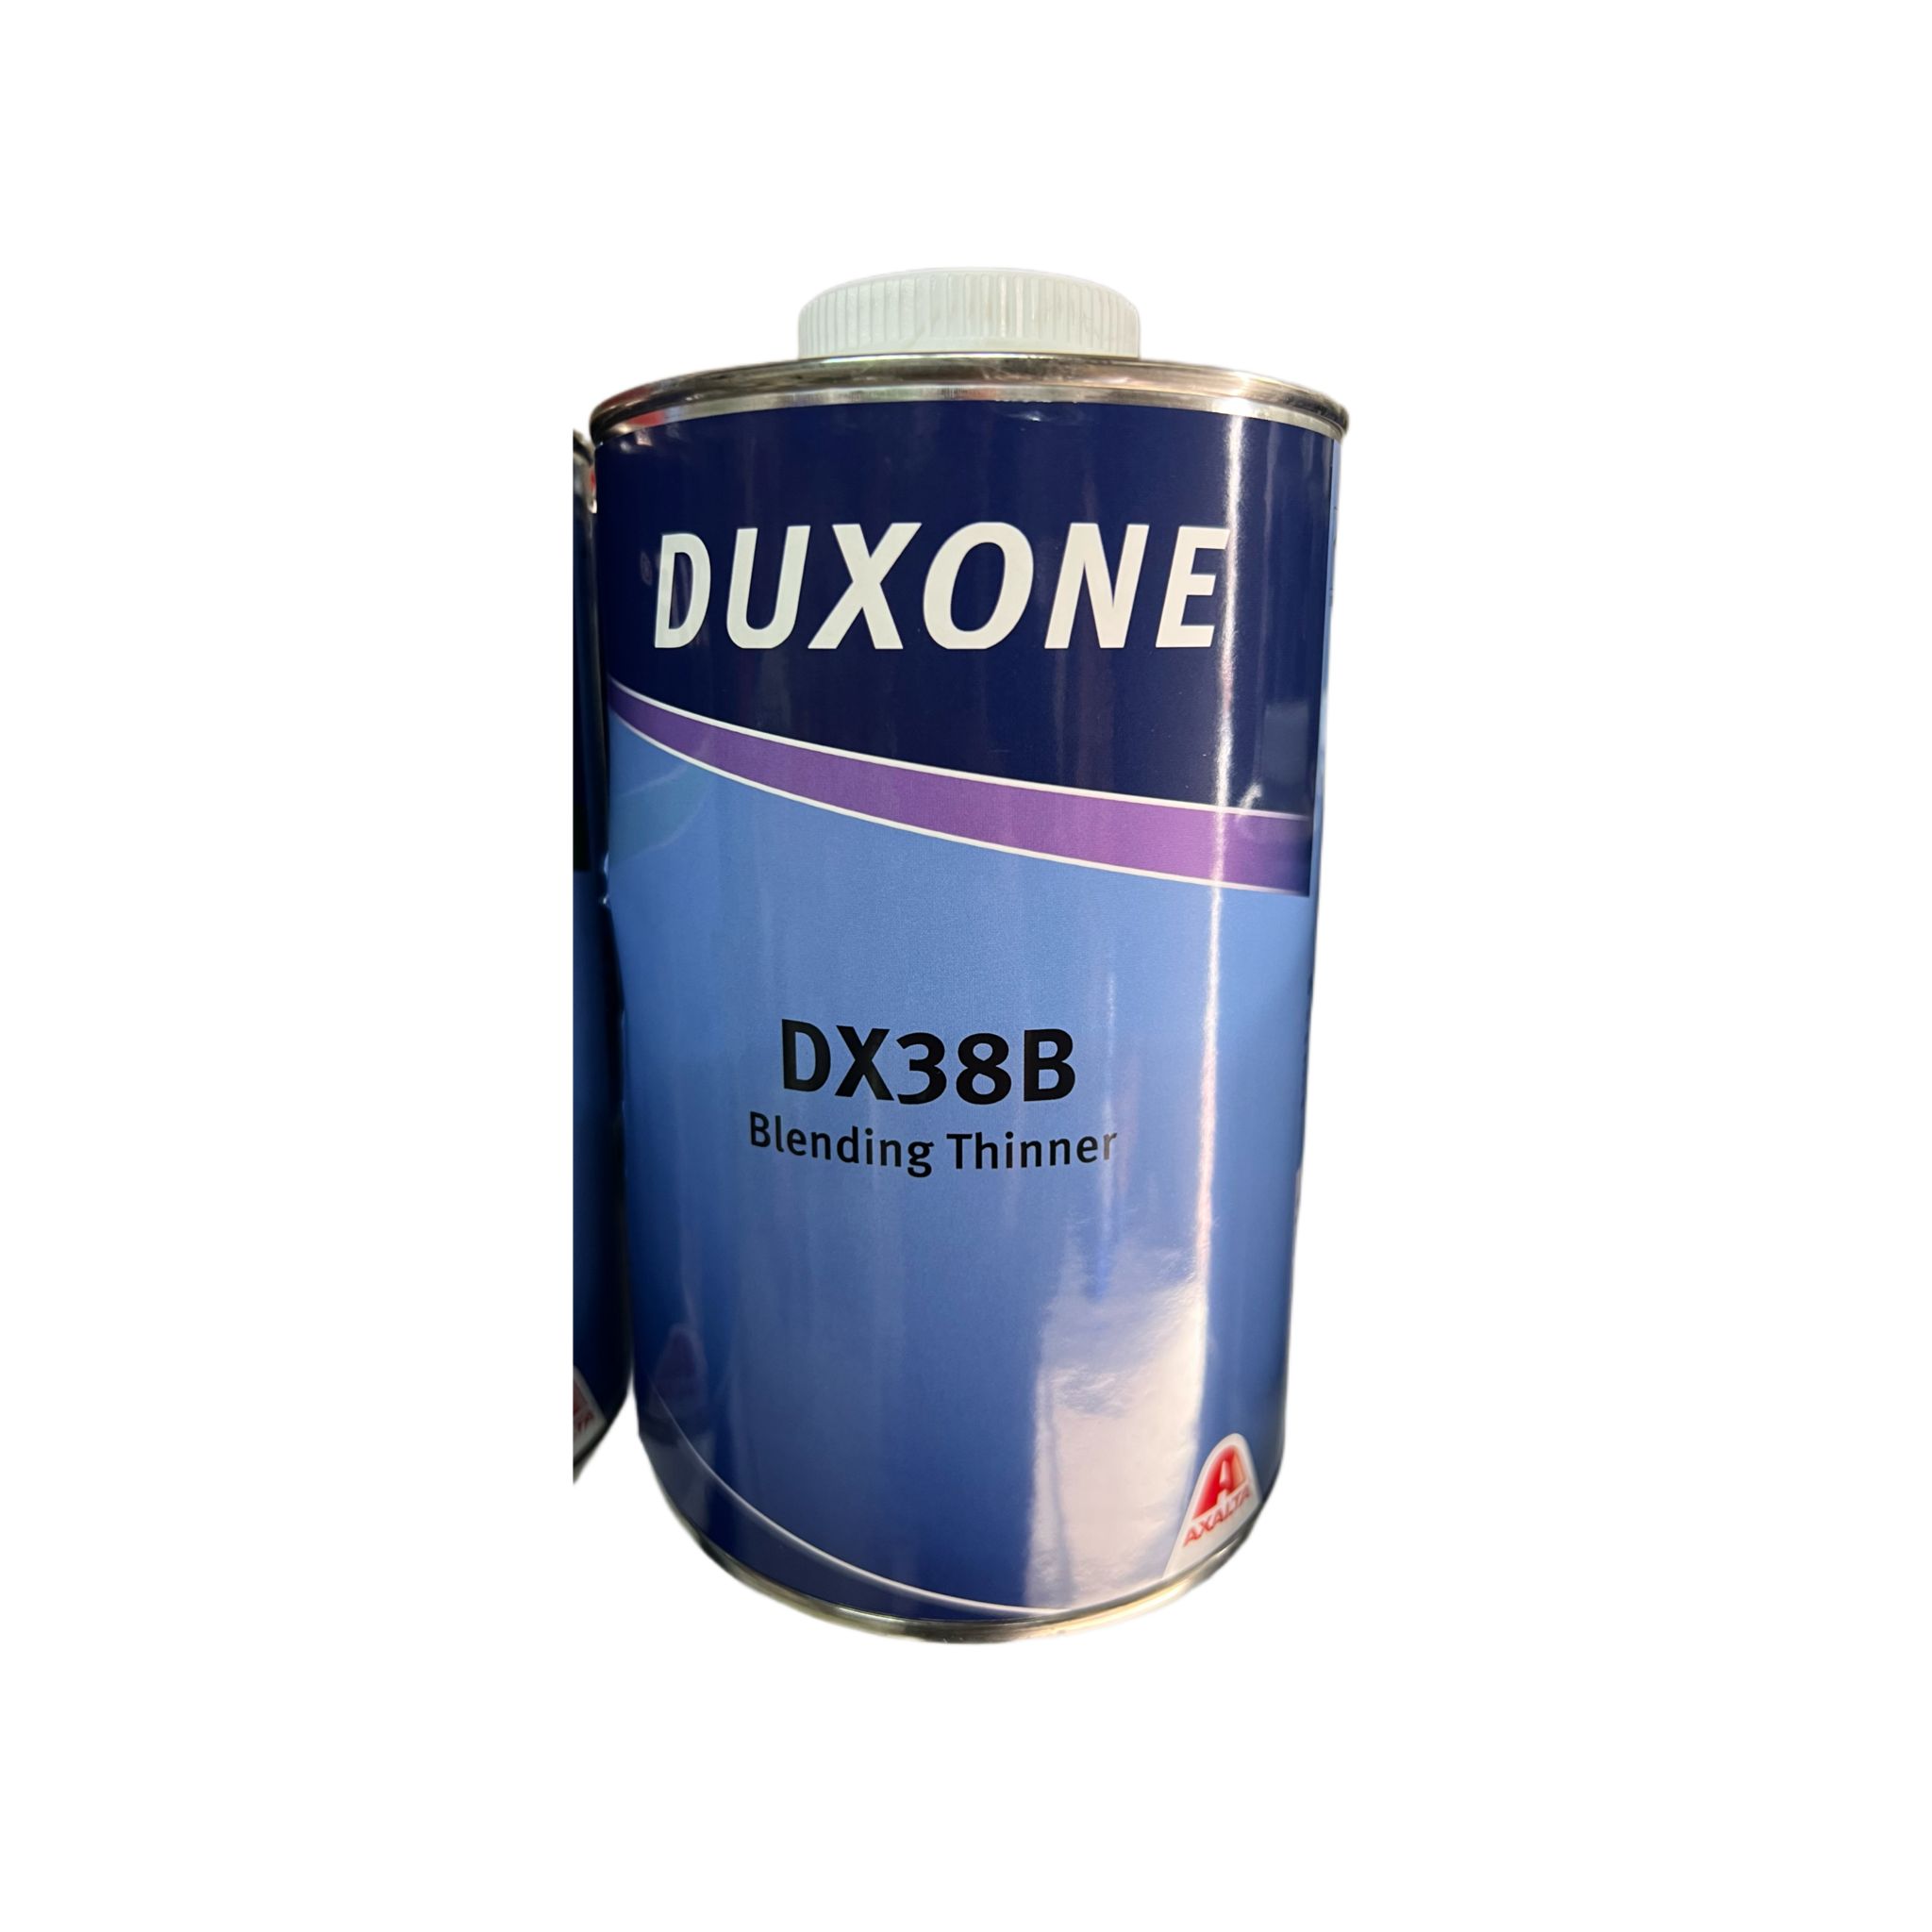 Duxone%20DX38B%201/1%20Blending%20Thinner%20Yama%20Tineri